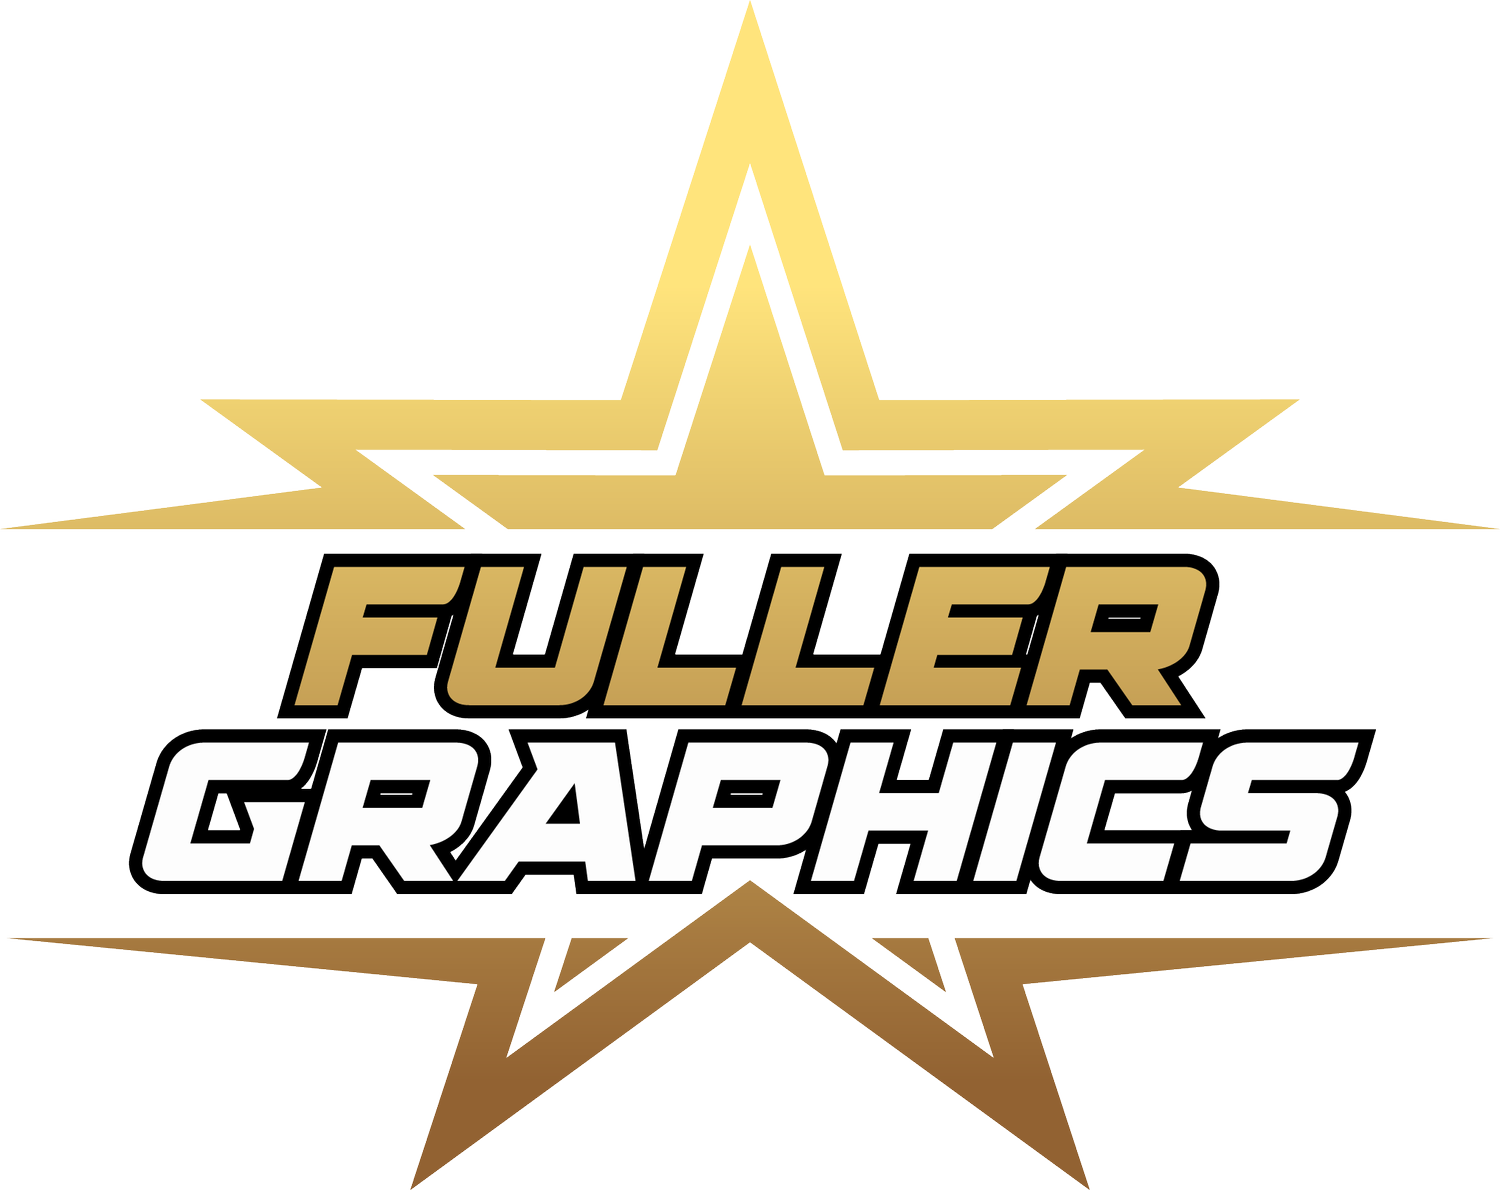 Fuller Graphics 